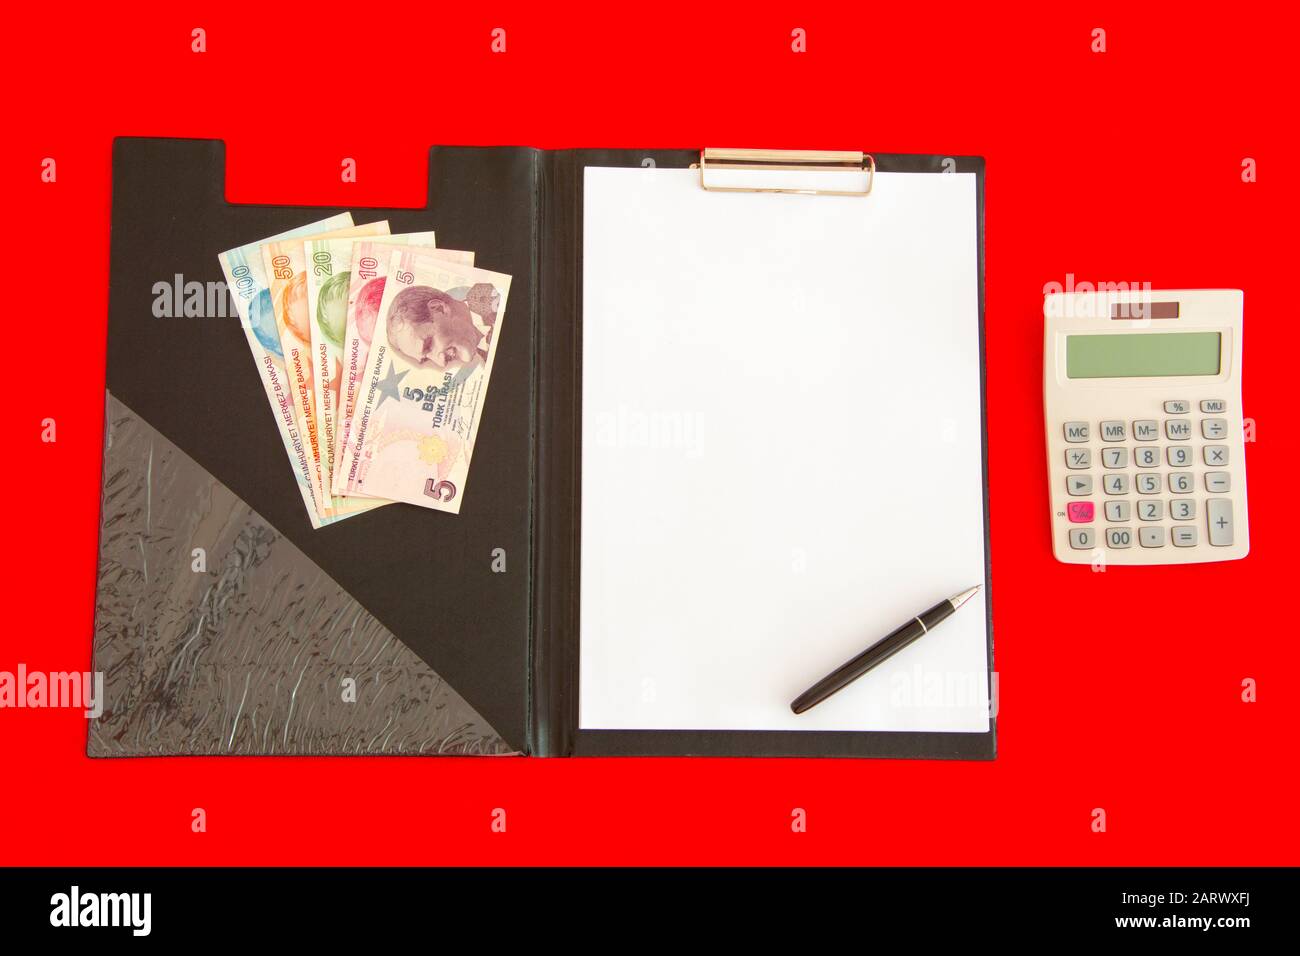 Rechner, Ordner und Geld auf rotem Hintergrund Stockfoto